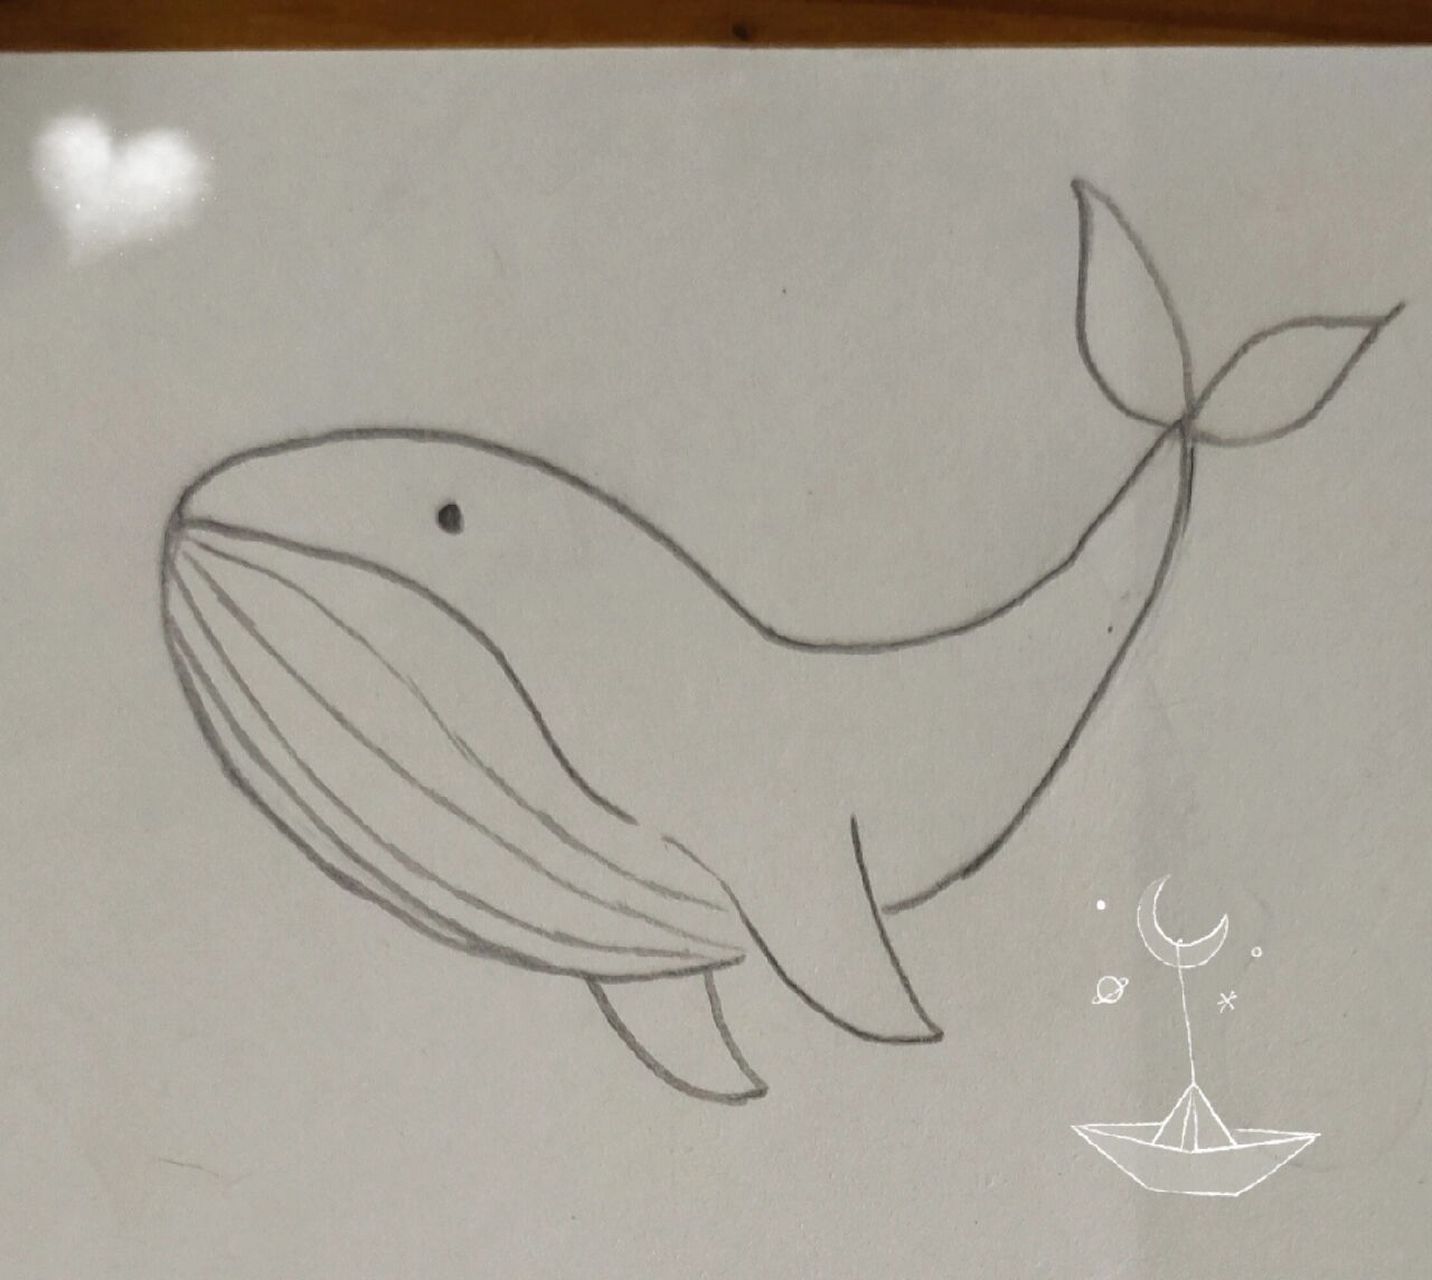 简单好看的鲸鱼简笔画图片